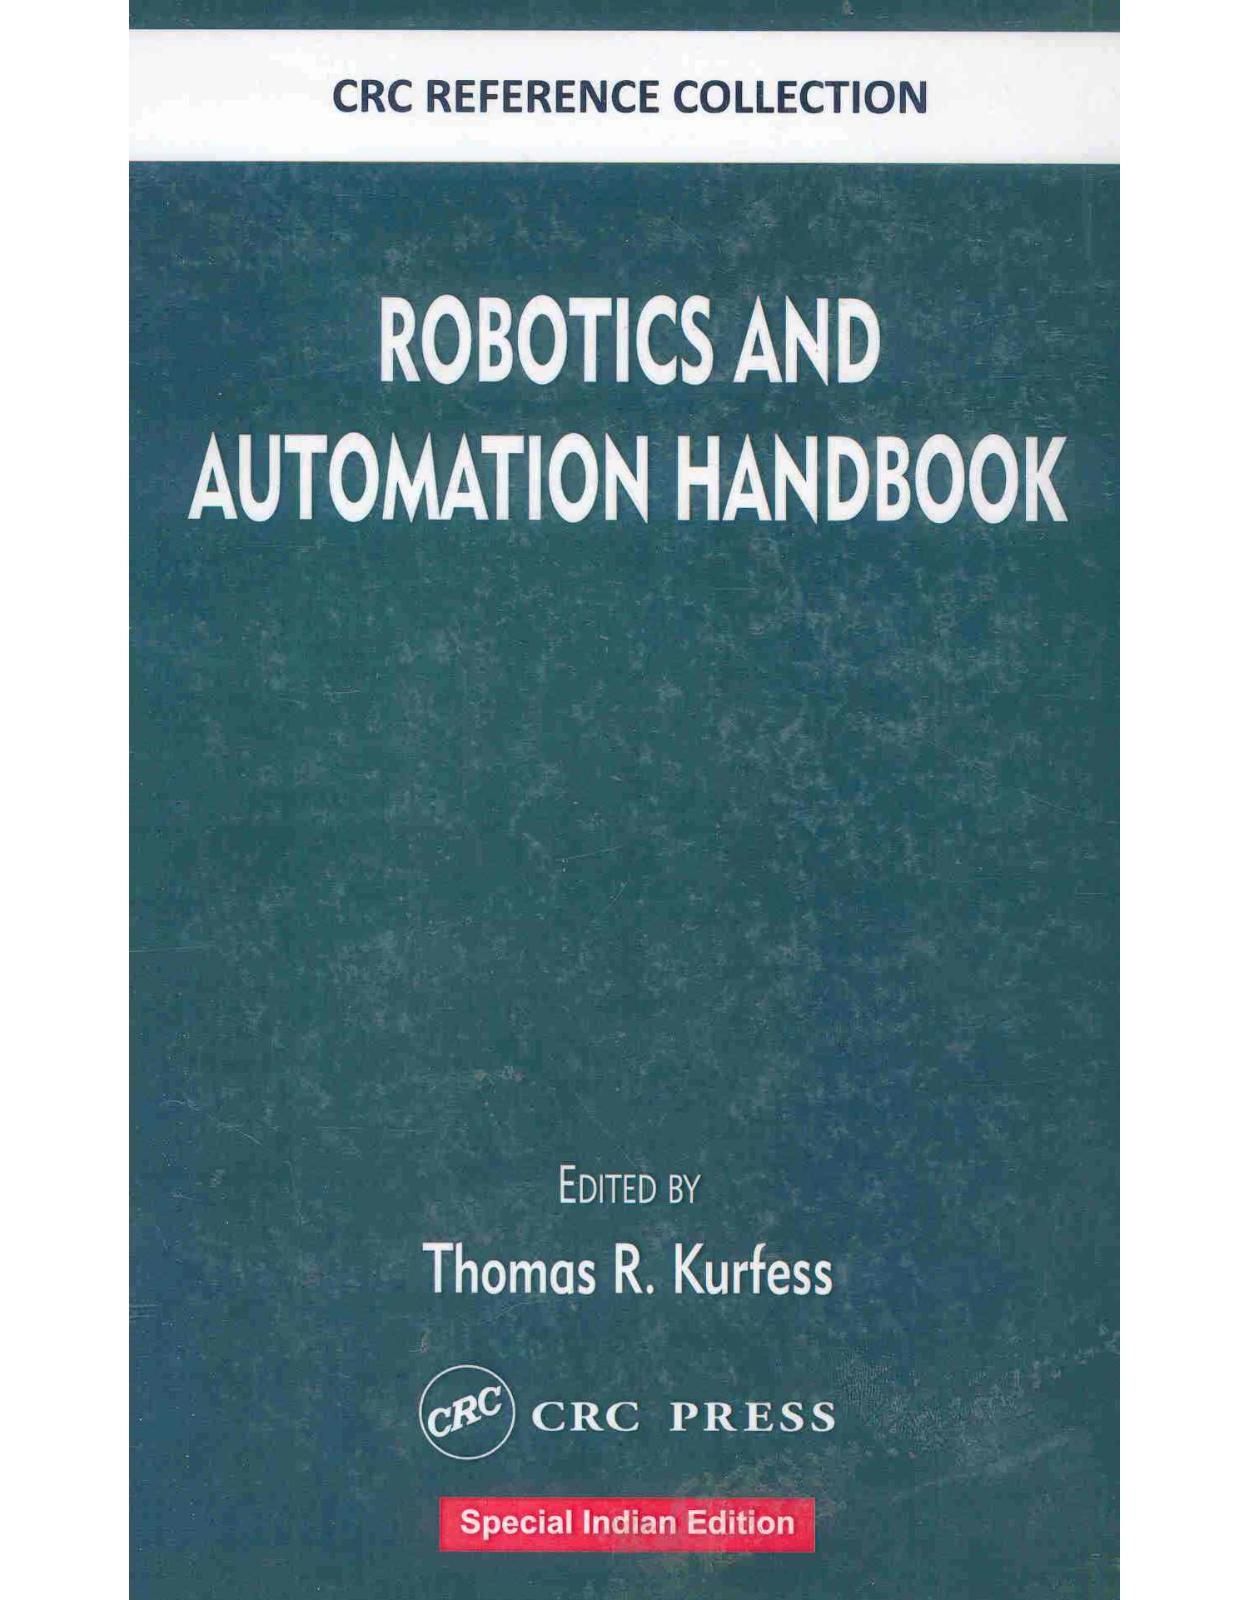 Robotics and Automation Handbook